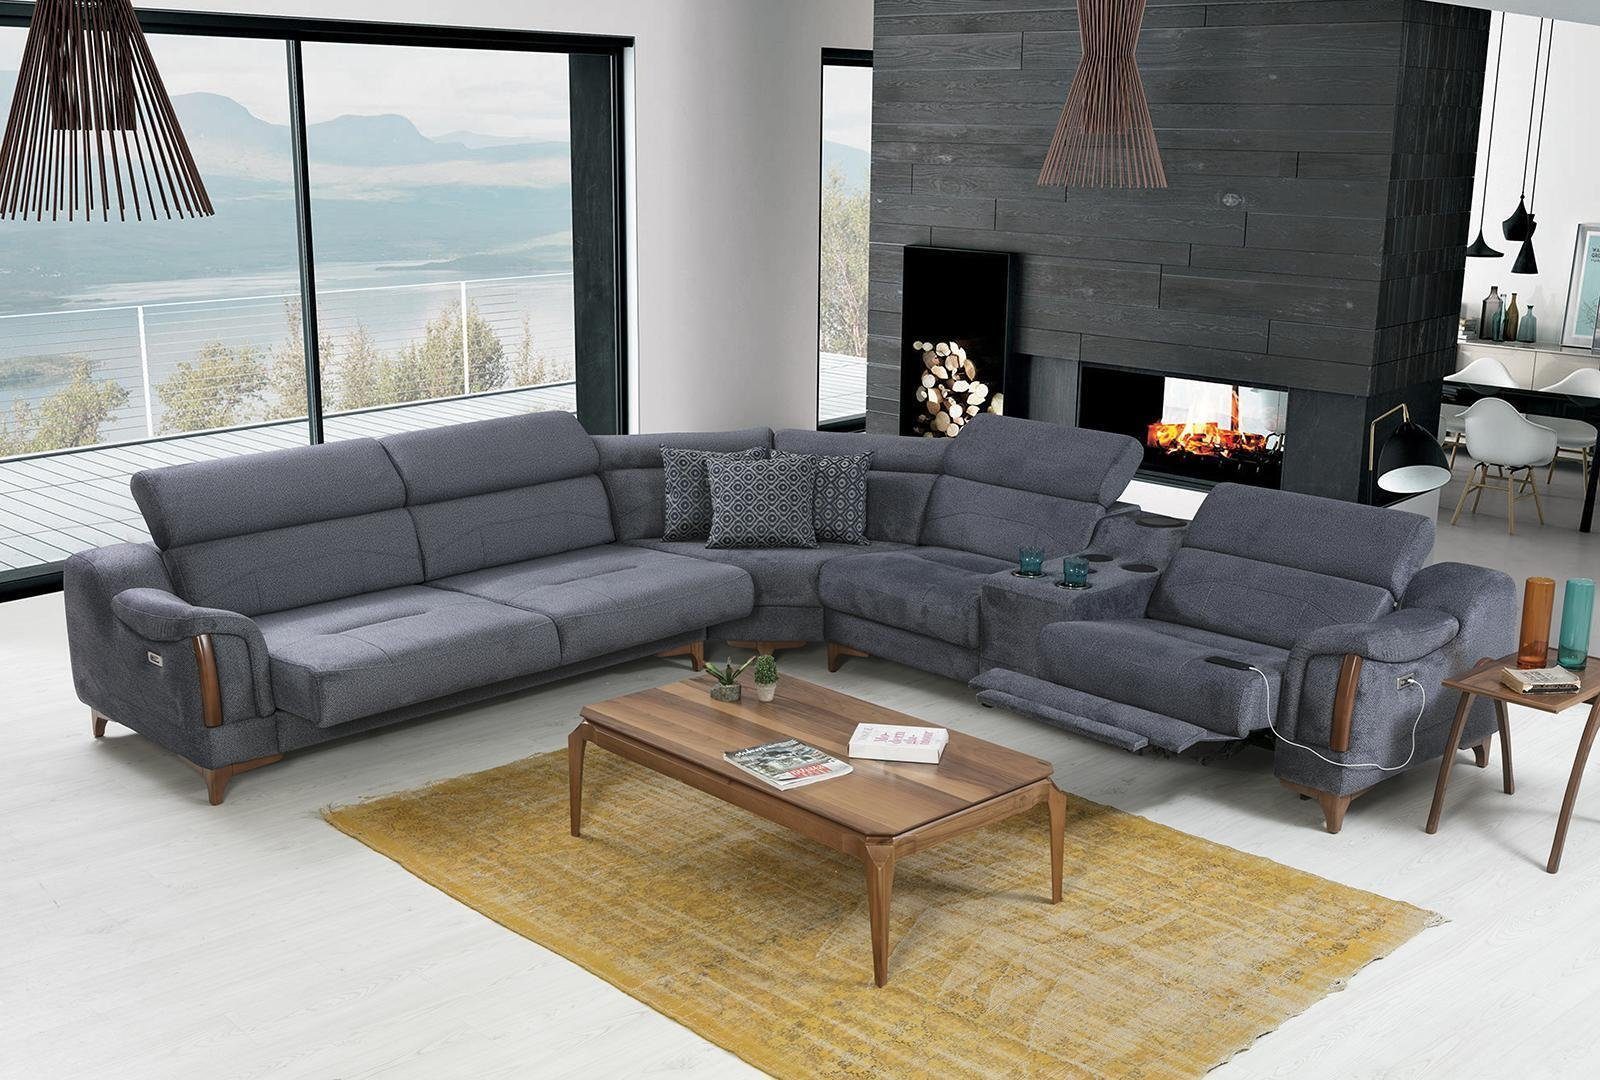 JVmoebel Ecksofa L-Form Made Ecksofa Modern 5 in Sofa Luxus Grau Teile, Möbel, Wohnzimmer Europa Design